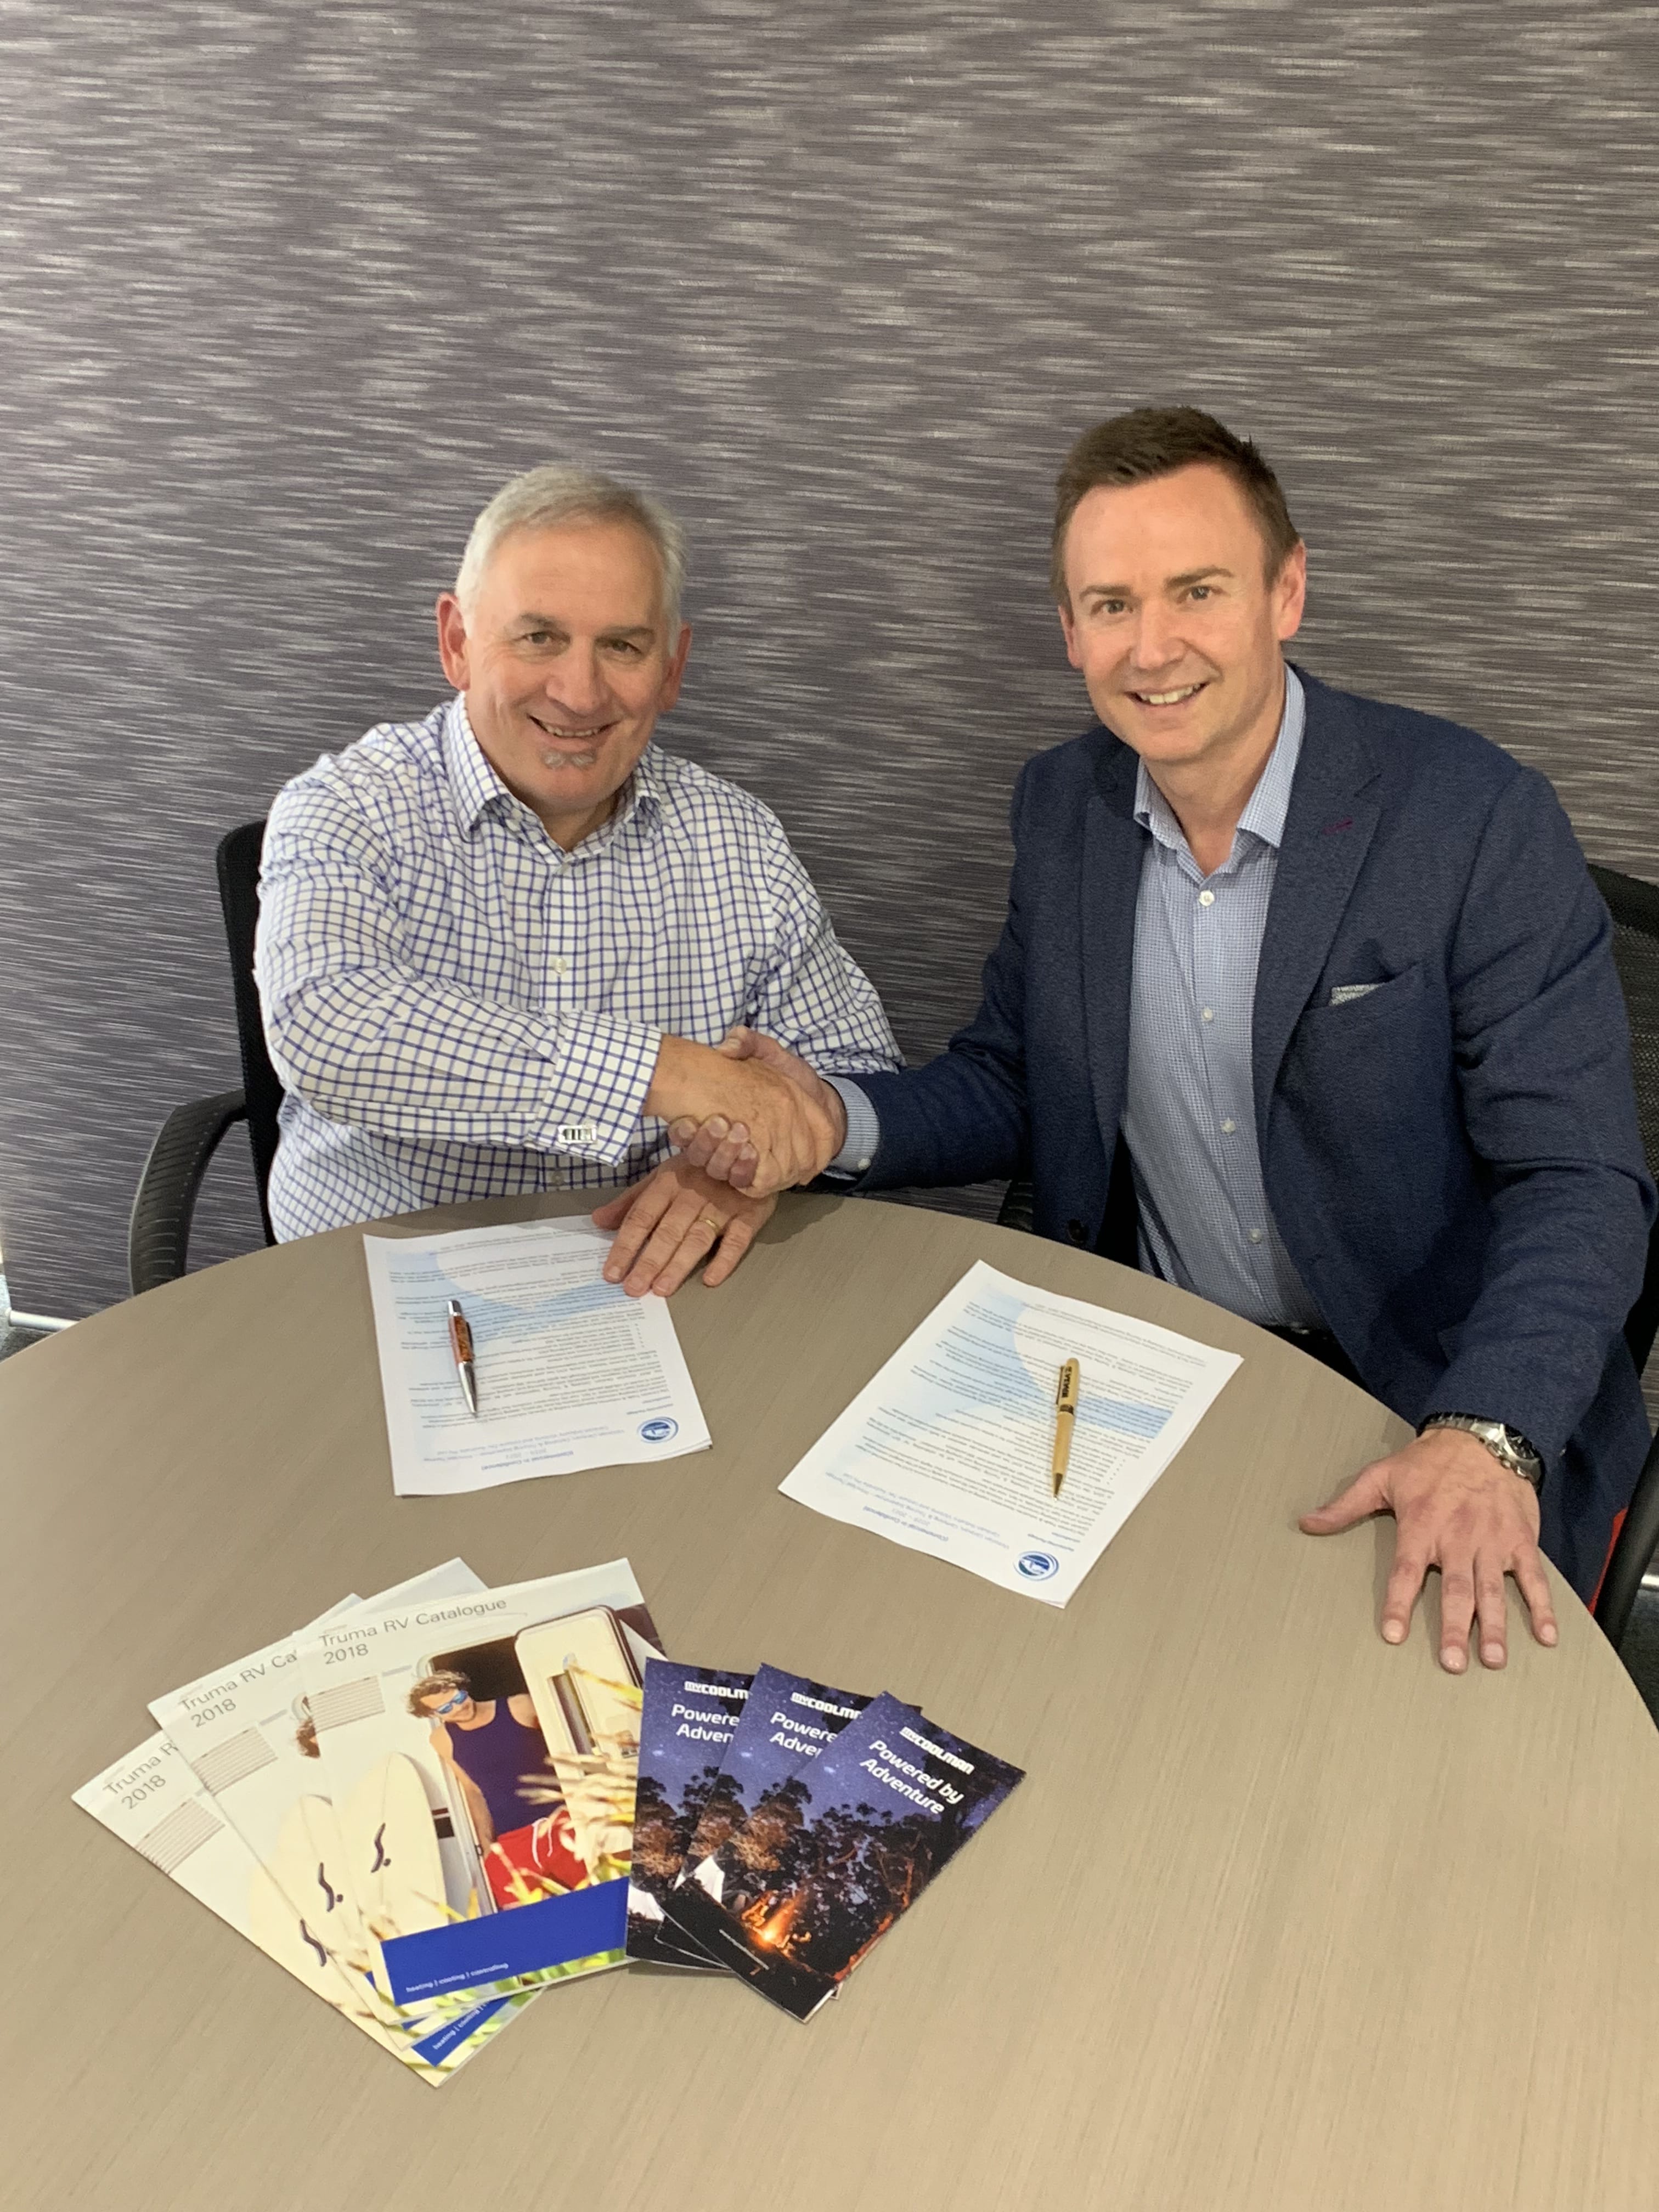  Rob Lucas & Paul Widdis - Principal Partnership Signing